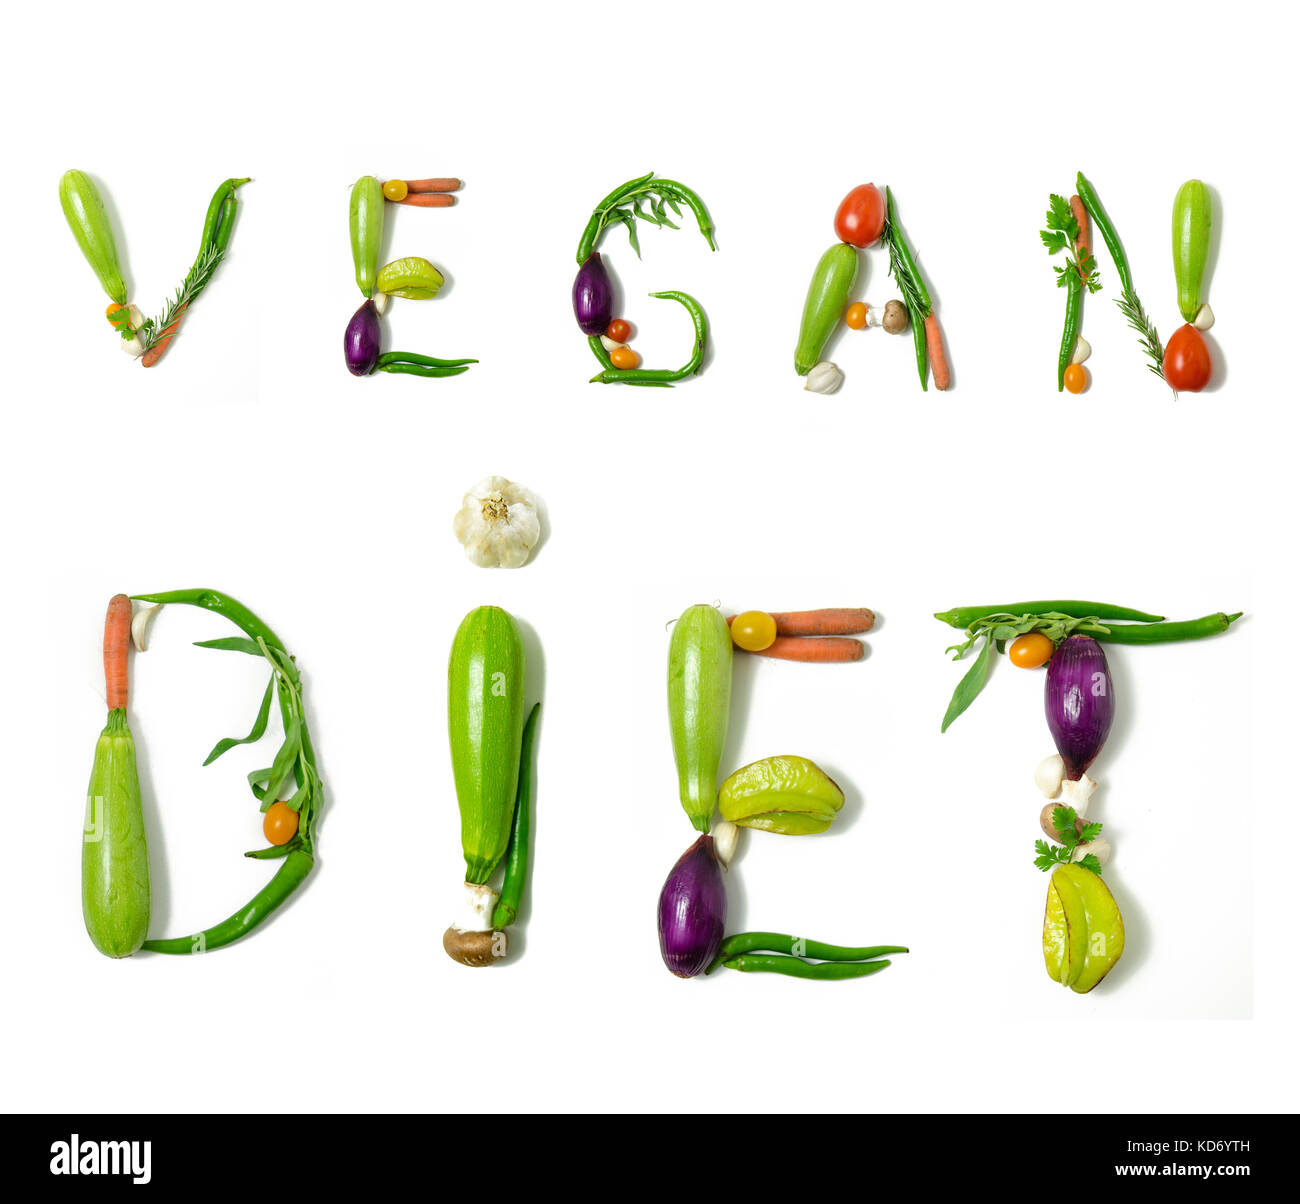 Phrase "végétalisme" écrit avec des légumes comme un concept de style de vie sain, régime végétarien ou végétalien, la remise en forme ou la réduction de calories Banque D'Images